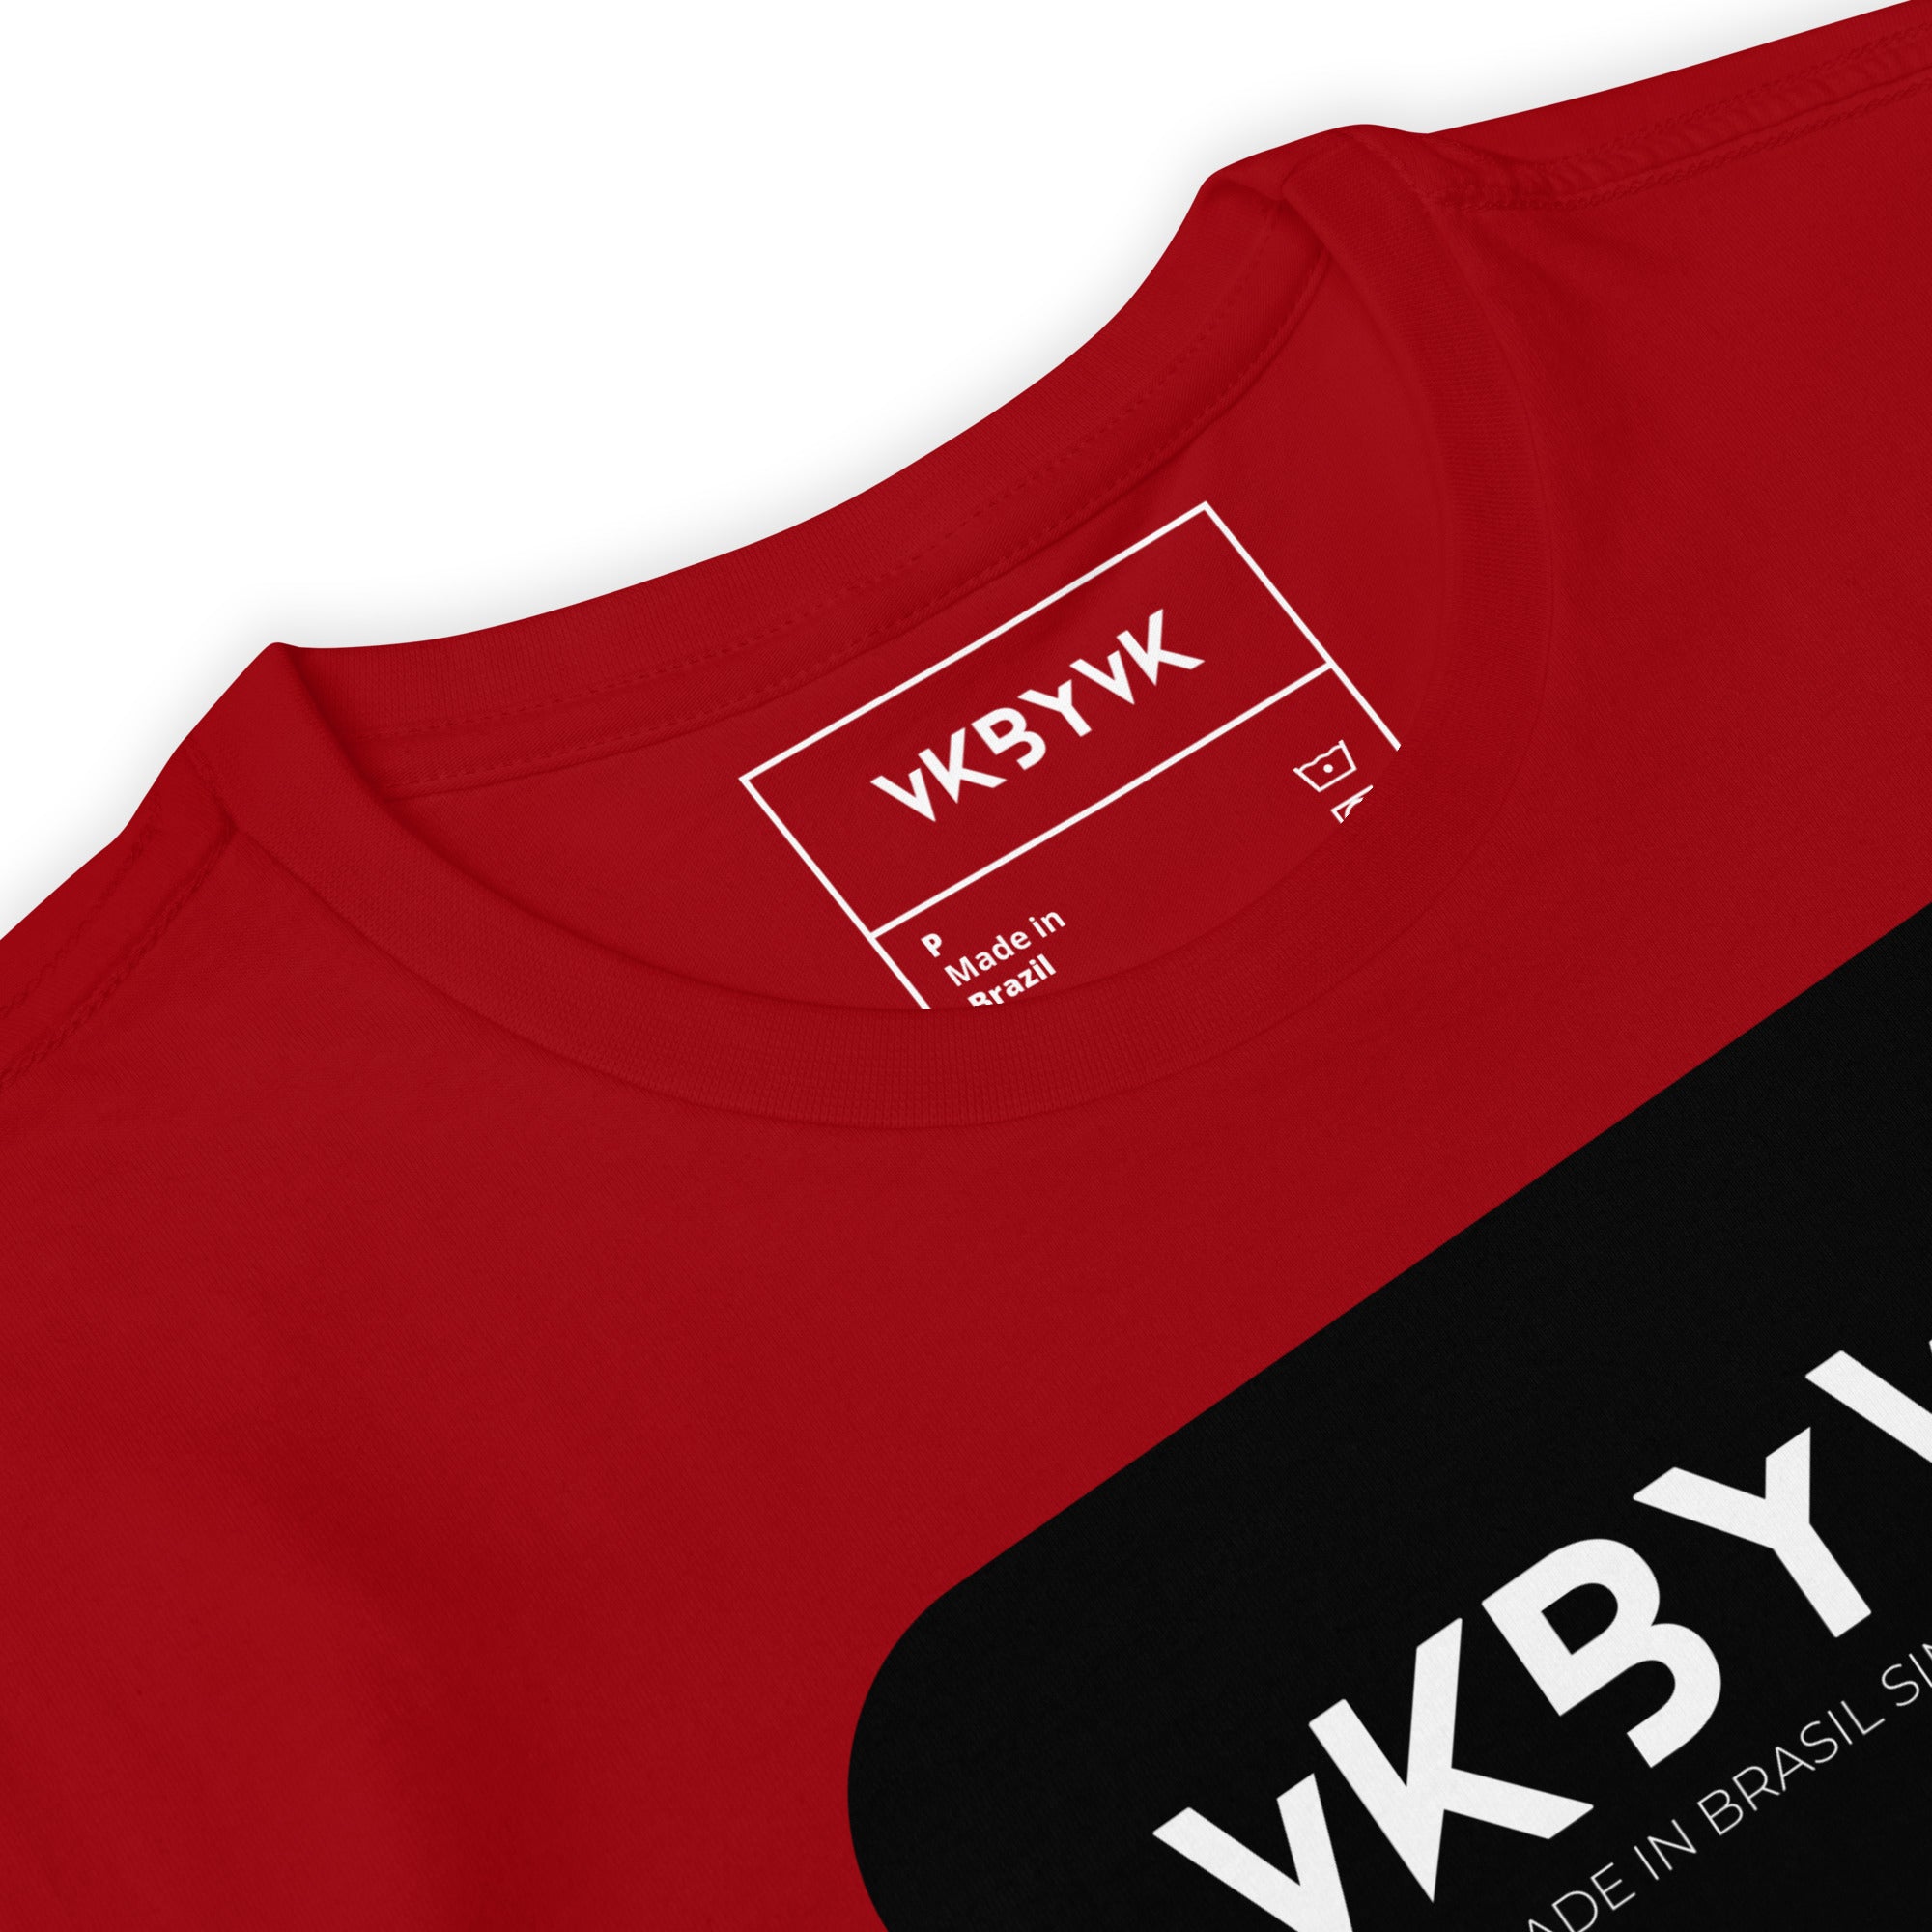 Camiseta VK by VK